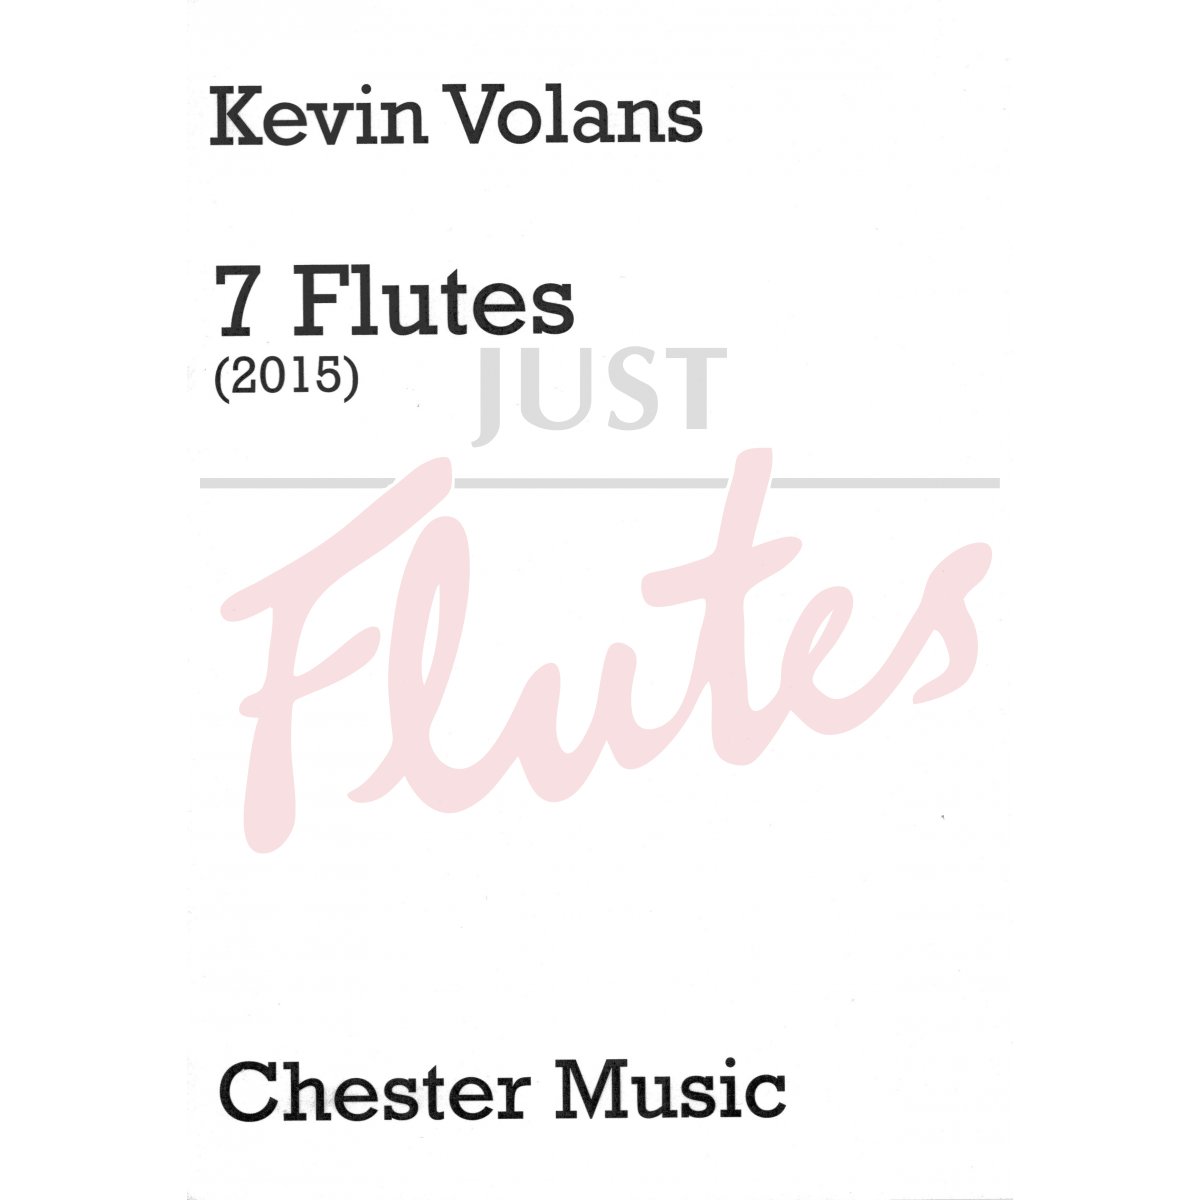 7 Flutes